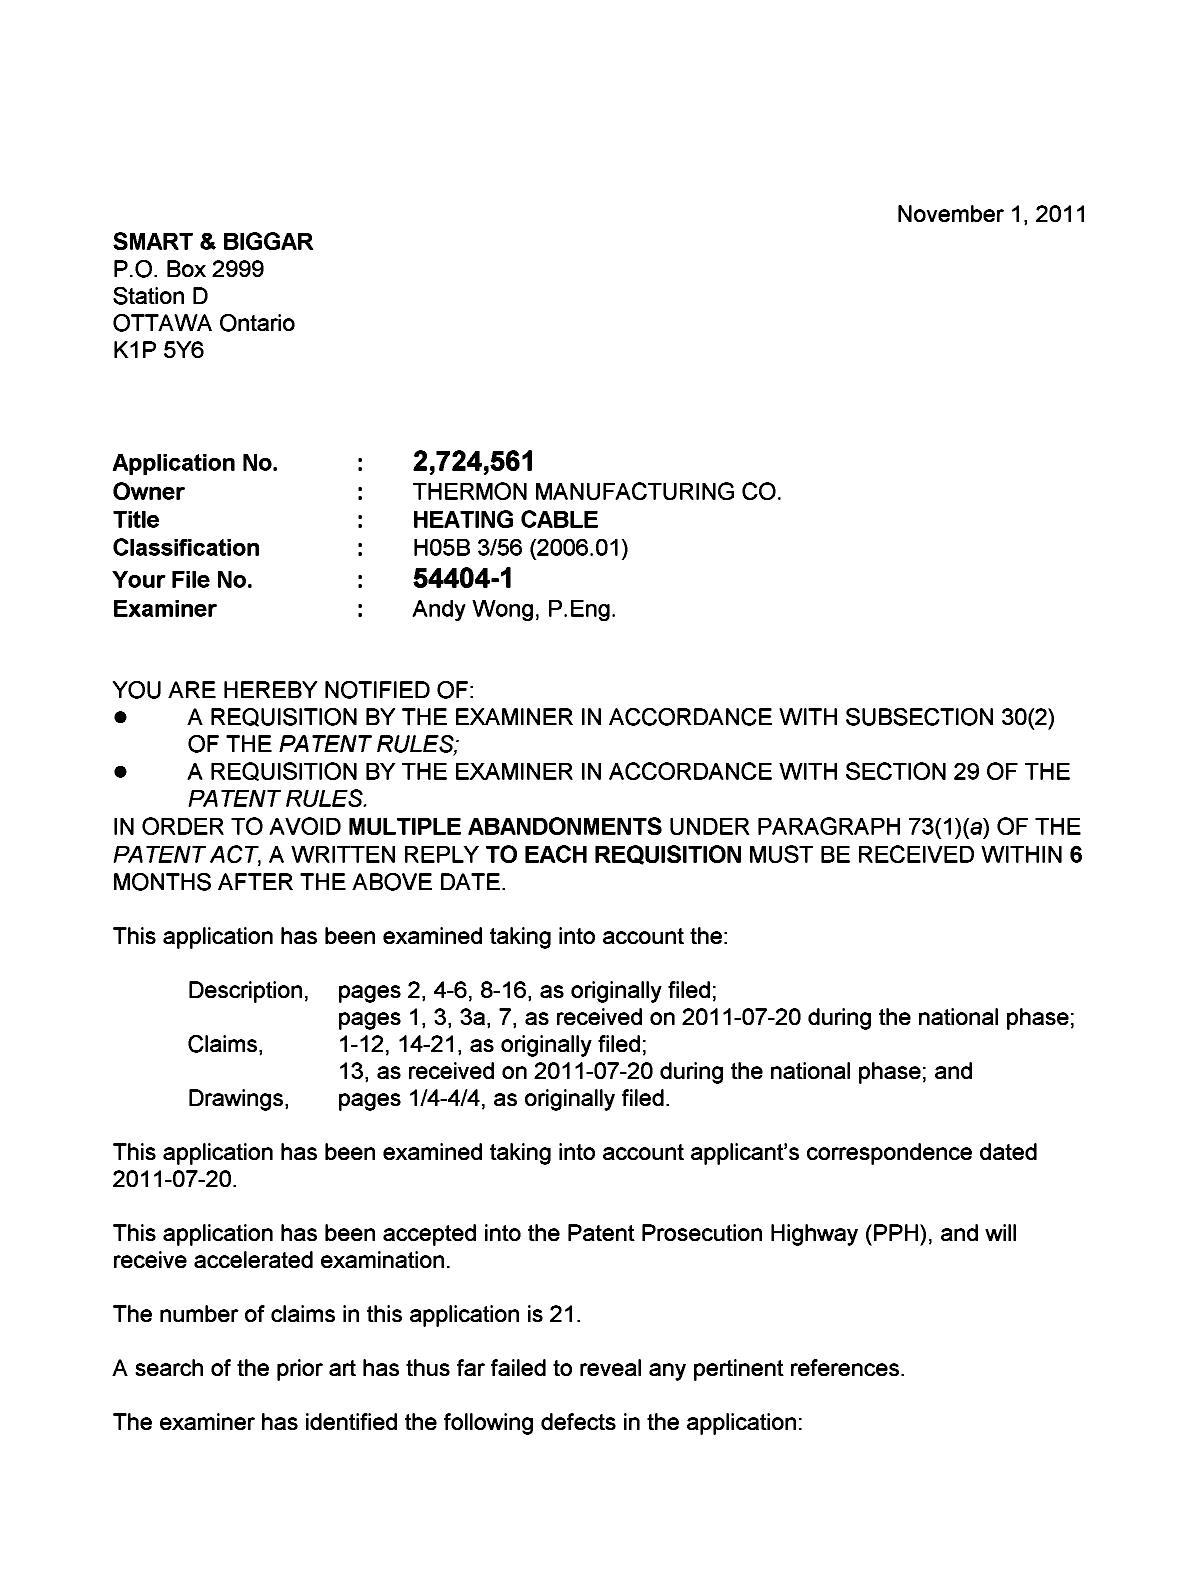 Document de brevet canadien 2724561. Poursuite-Amendment 20101201. Image 1 de 2